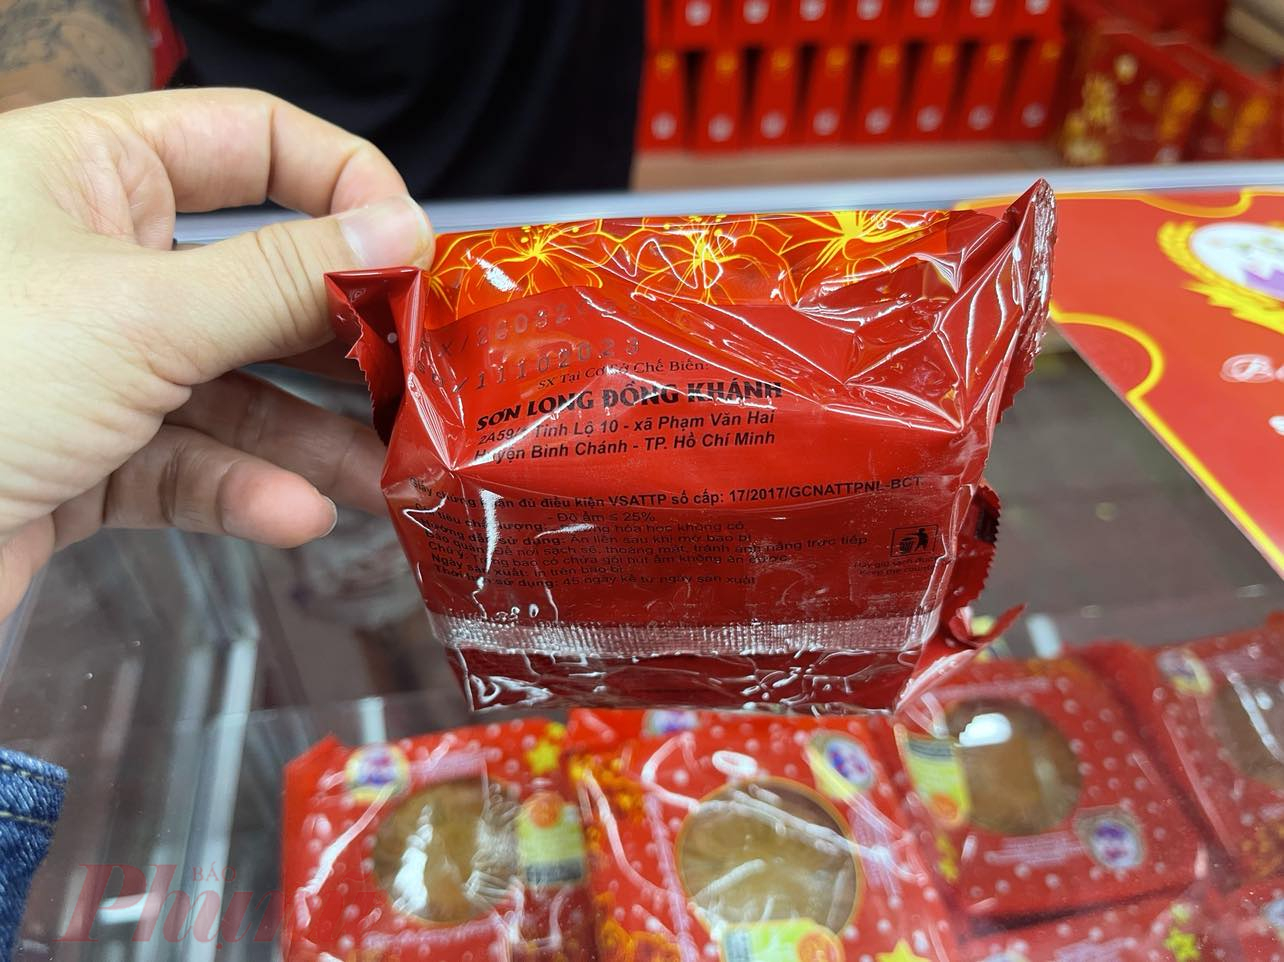 Nhiều người tiêu dùng thấy bảng hiệu bánh trung thu Đồng Khánh nhưng thực chất là bánh của Sơn Long Đồng Khánh - Ảnh: Nguyễn Cẩm